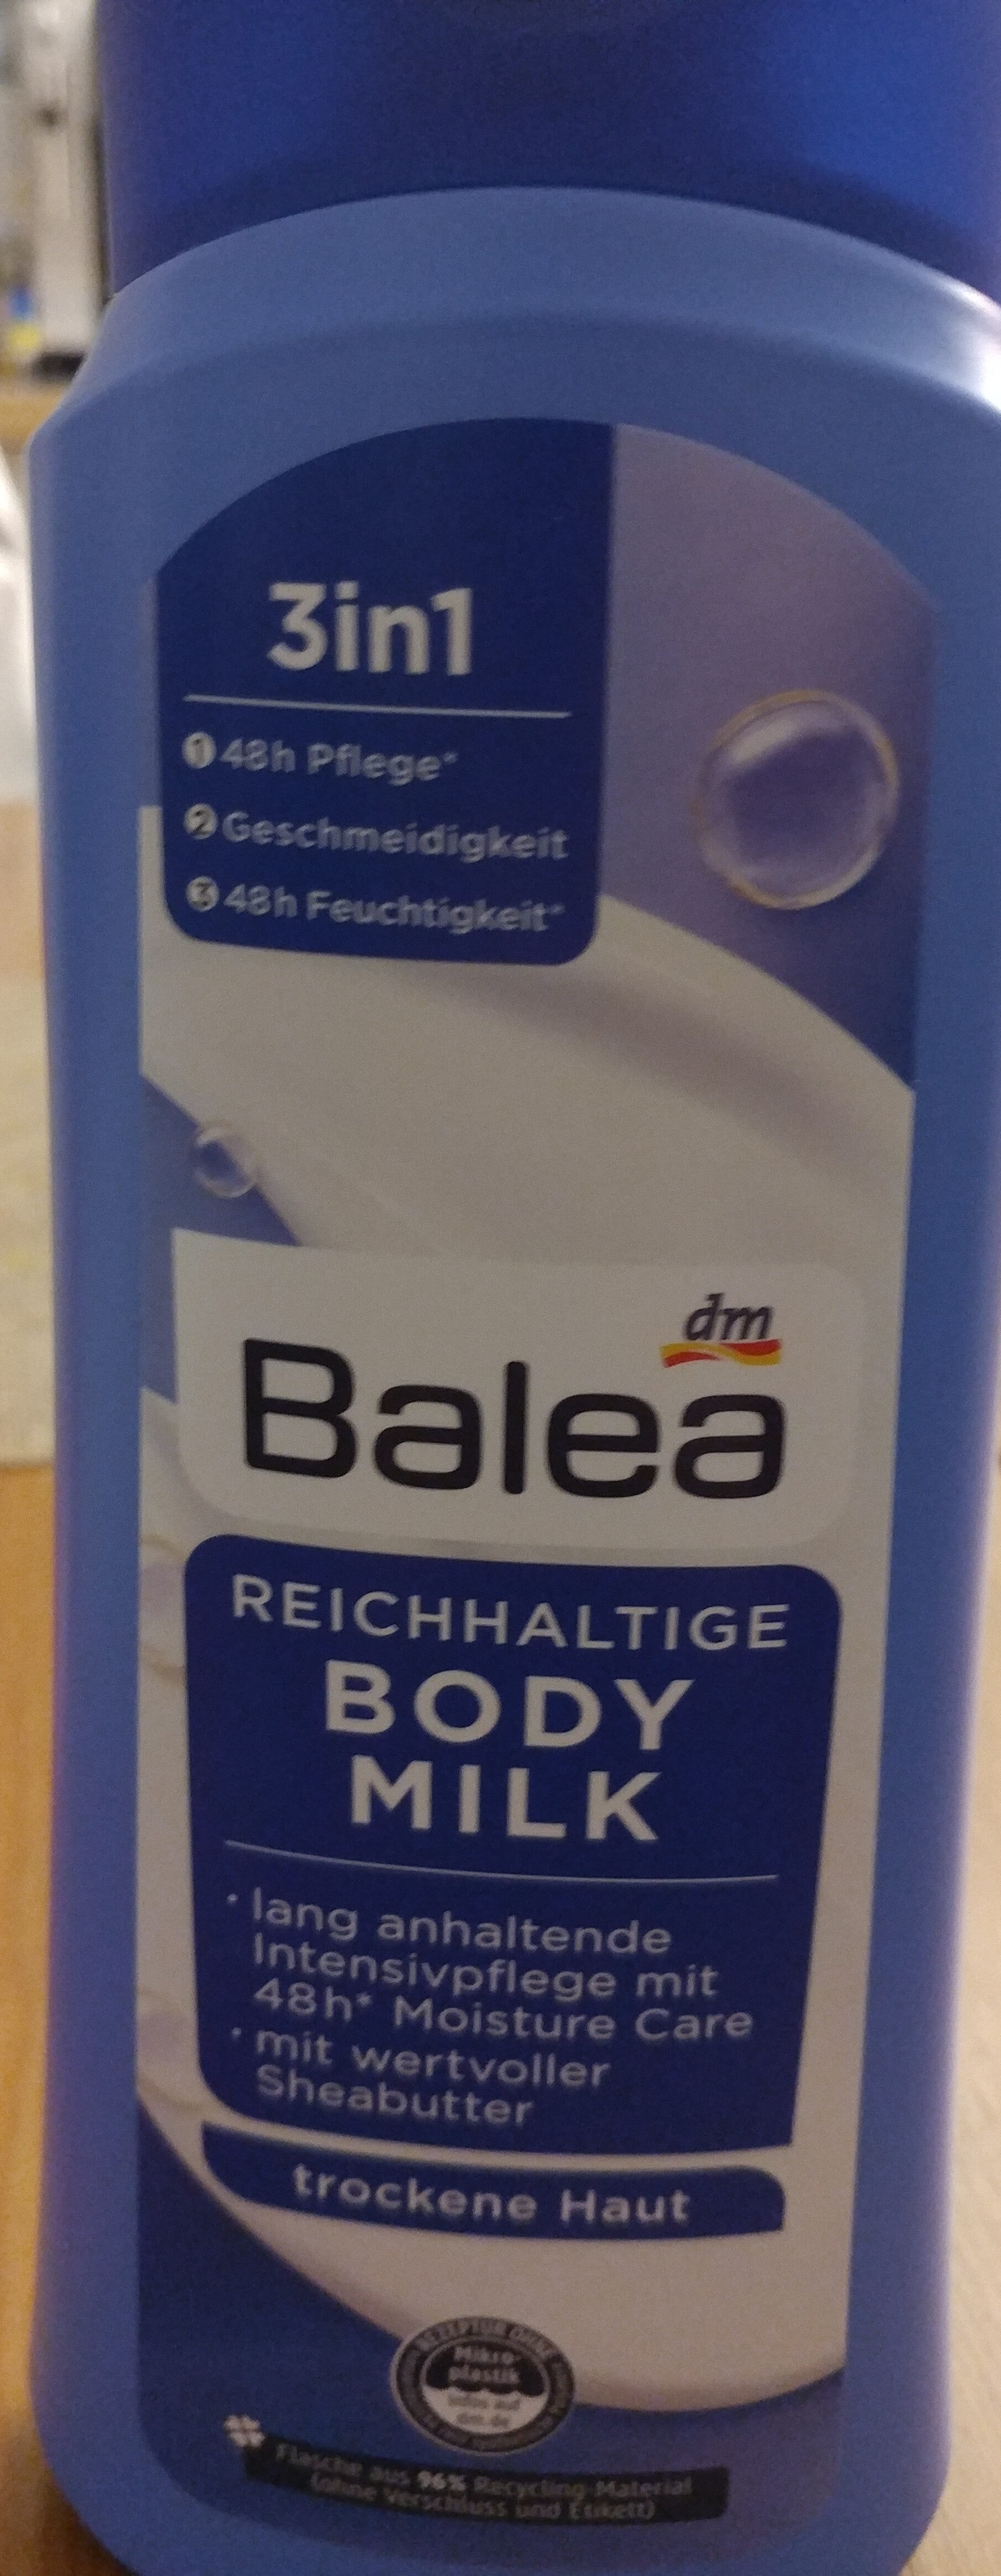 body milk - Produkt - de